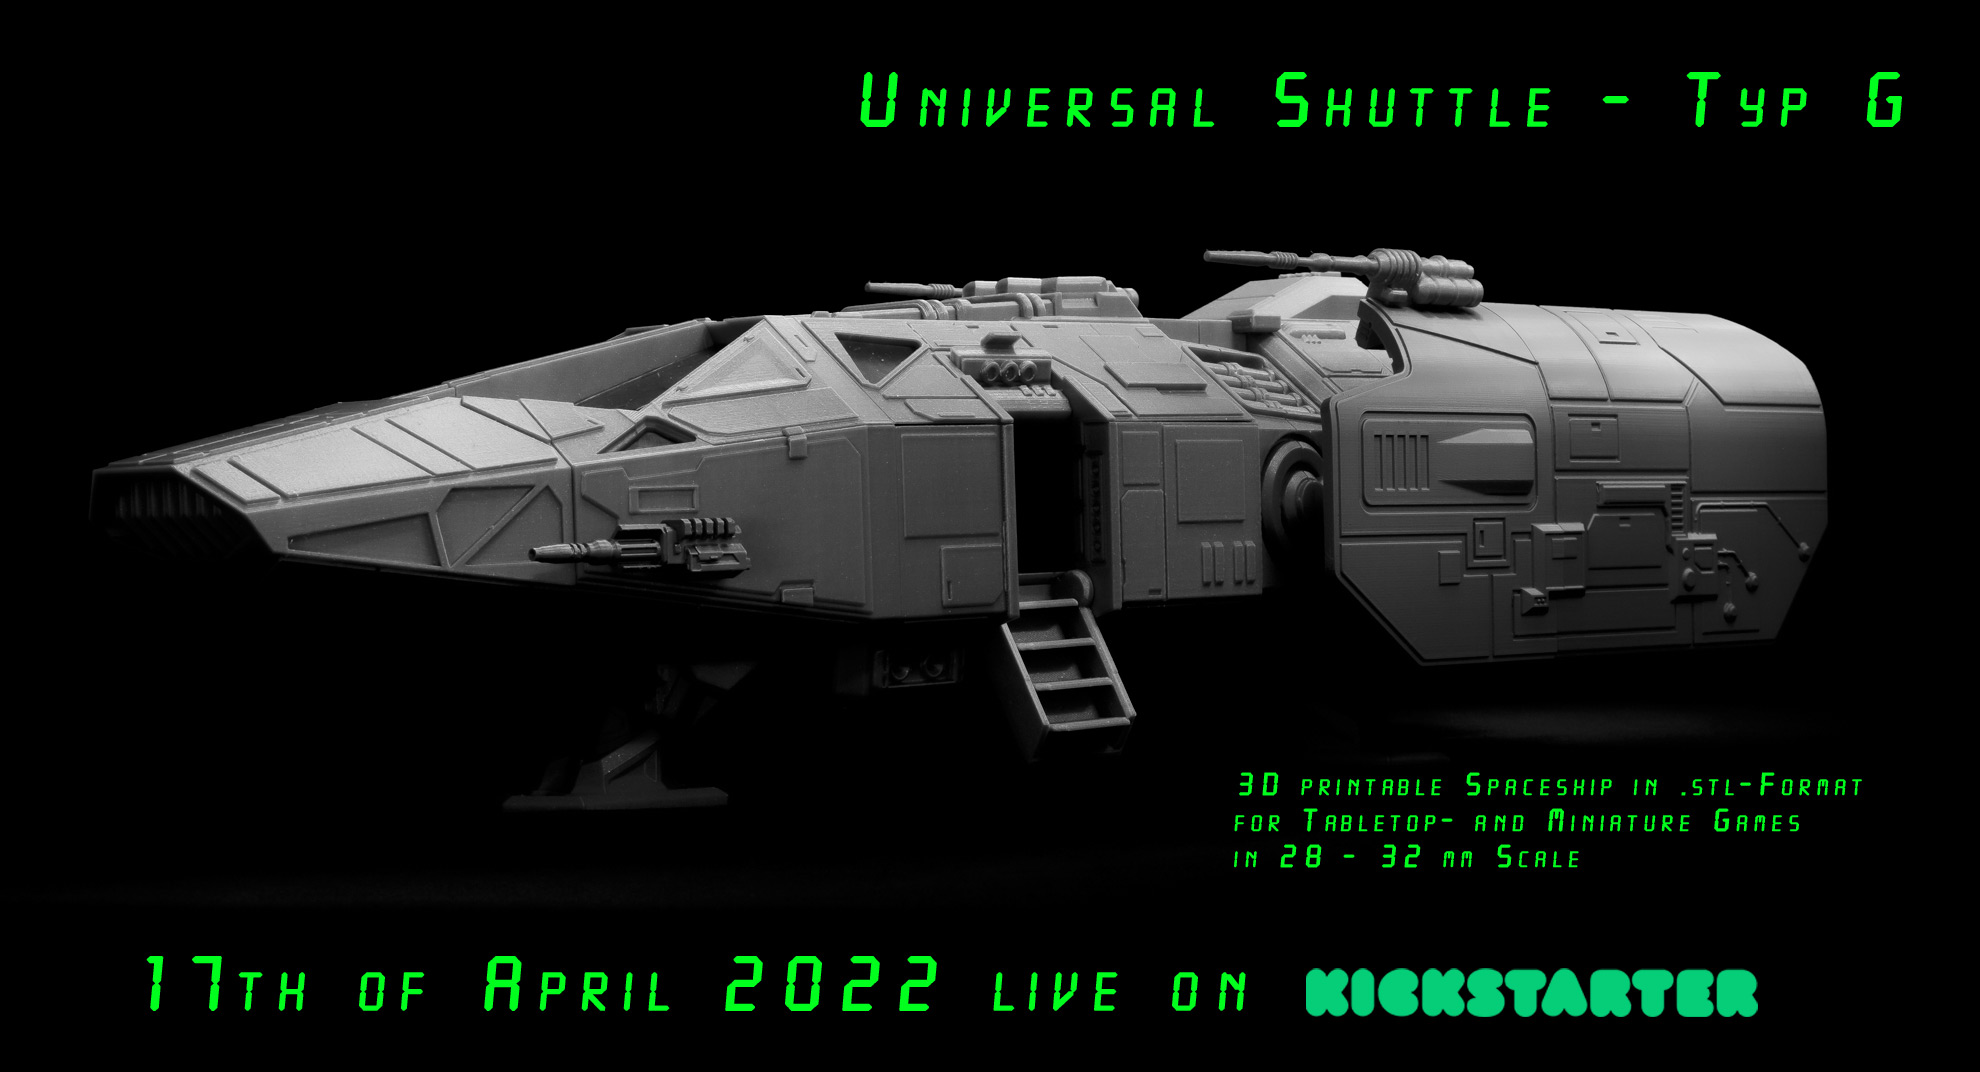 Universal Shuttle - Typ G Kickstarter Campaign